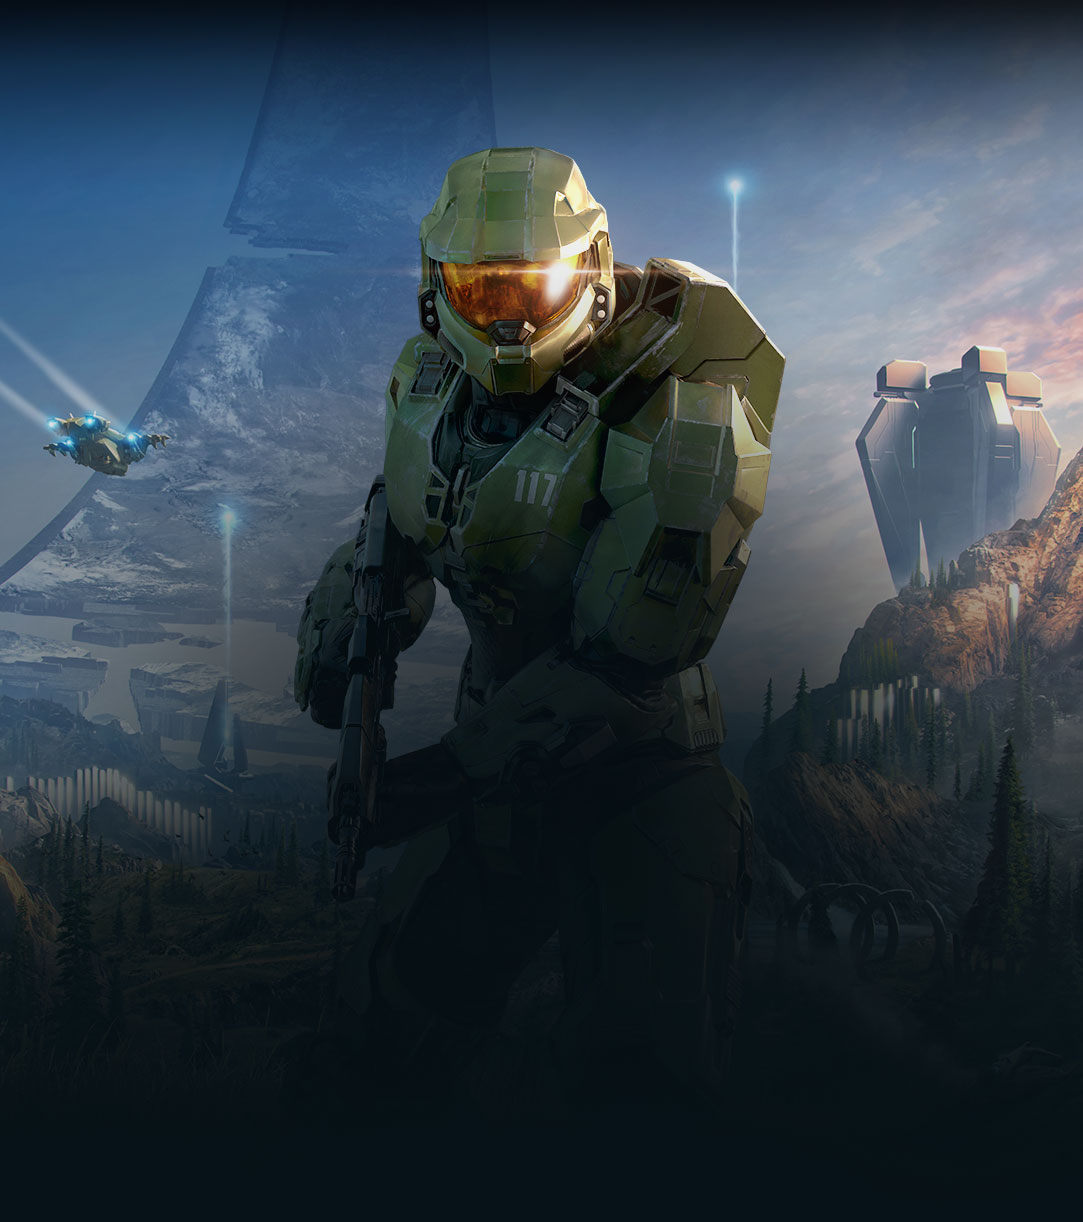 Halo Infinite, Arkasında kırık bir Halo halkası bulunan Master Chief'in yeşil bir vadiye doğru bakma animasyonu